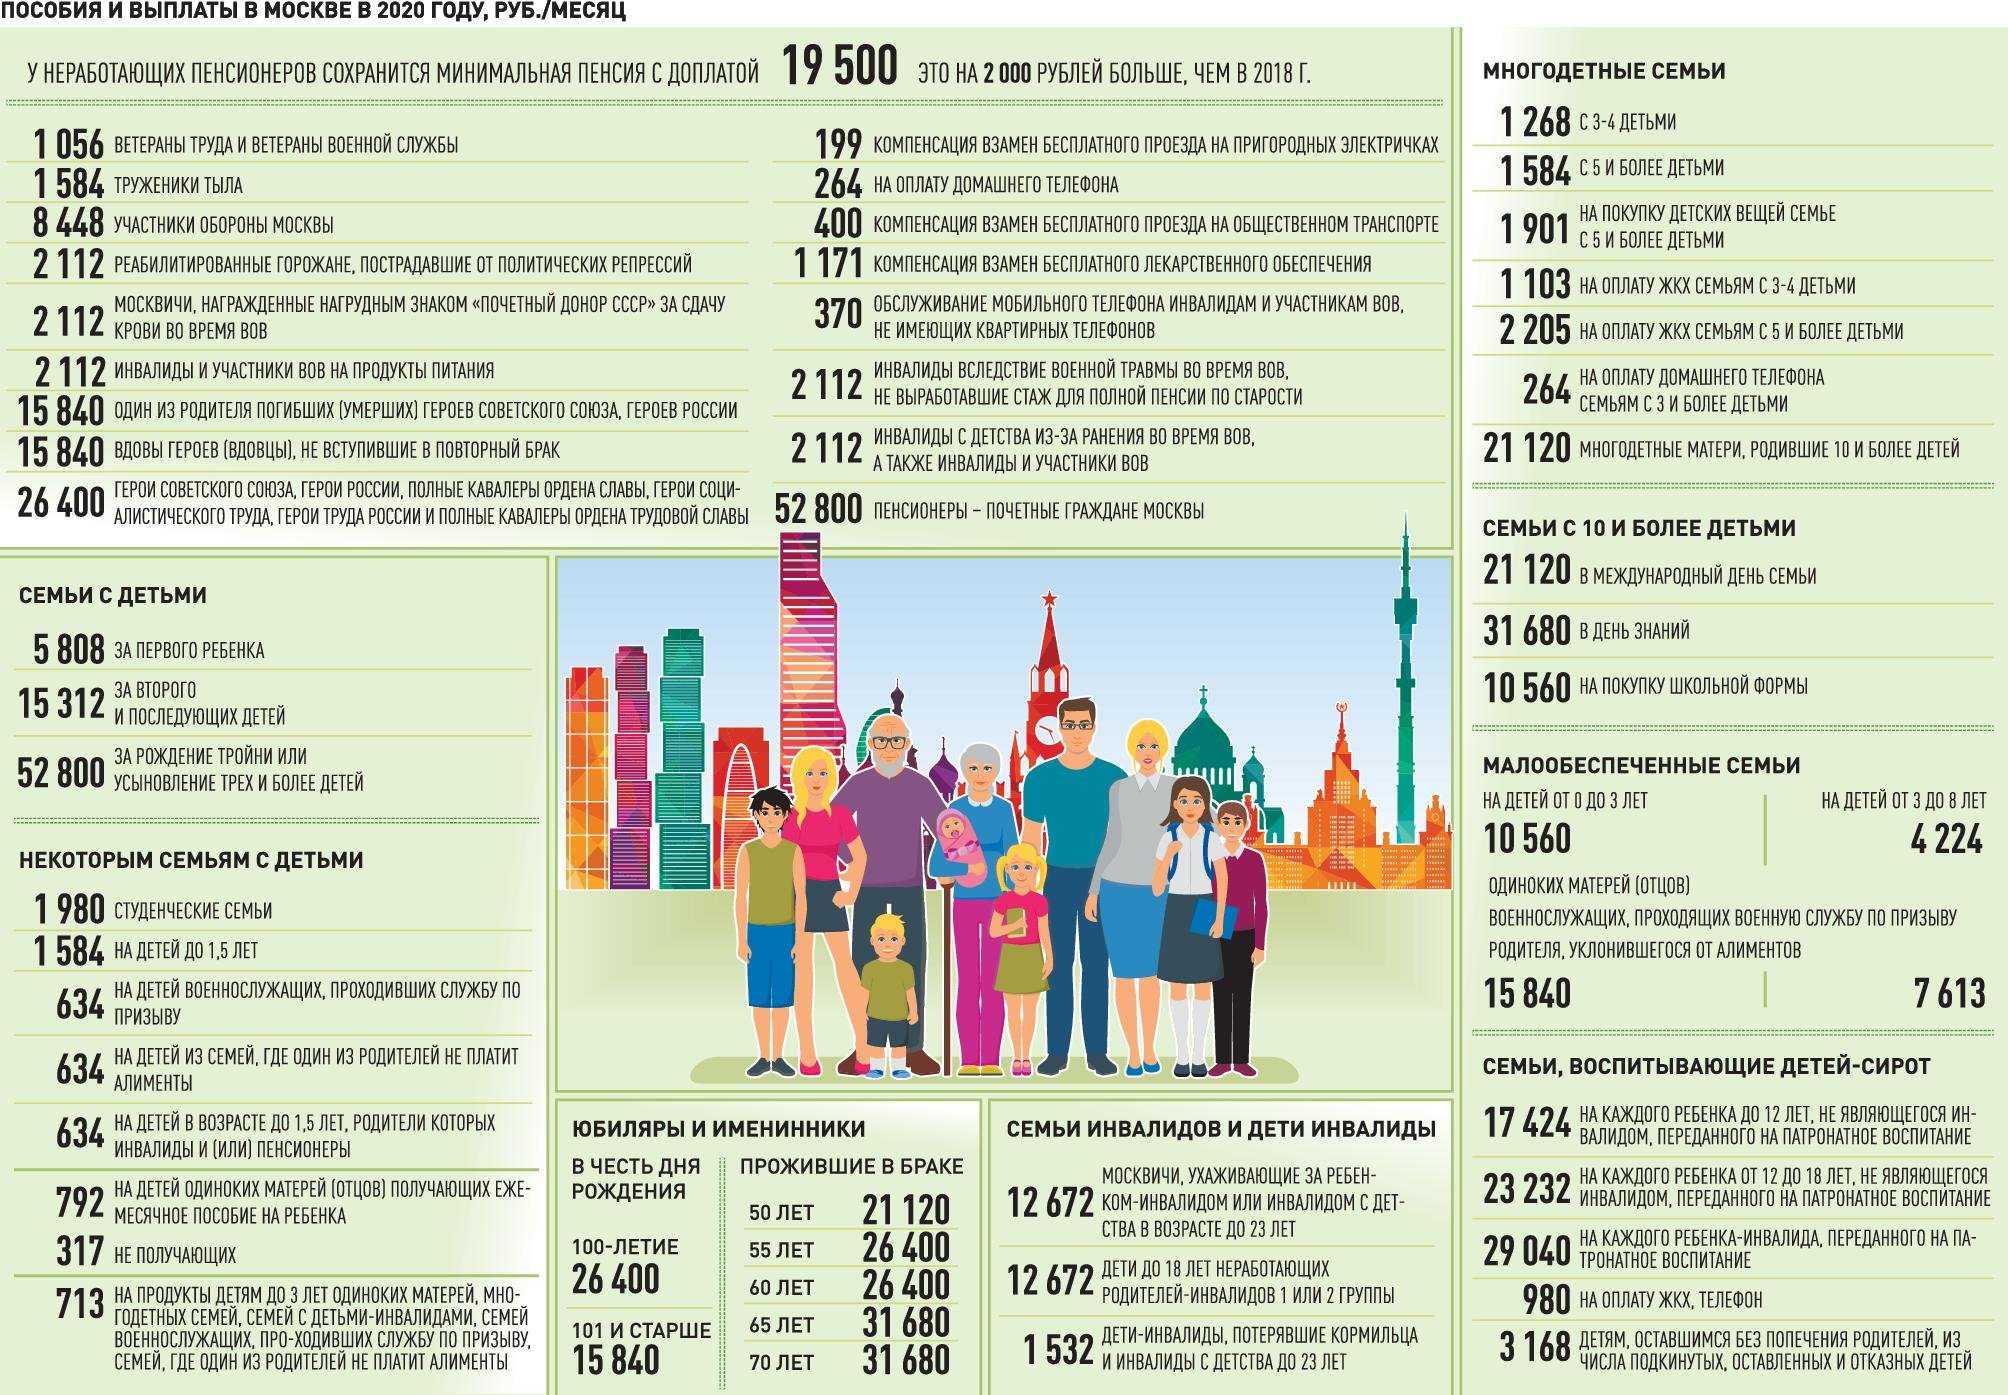 Программа «жилье для российской семьи»: как стать участником, условия и сроки оформления, документы